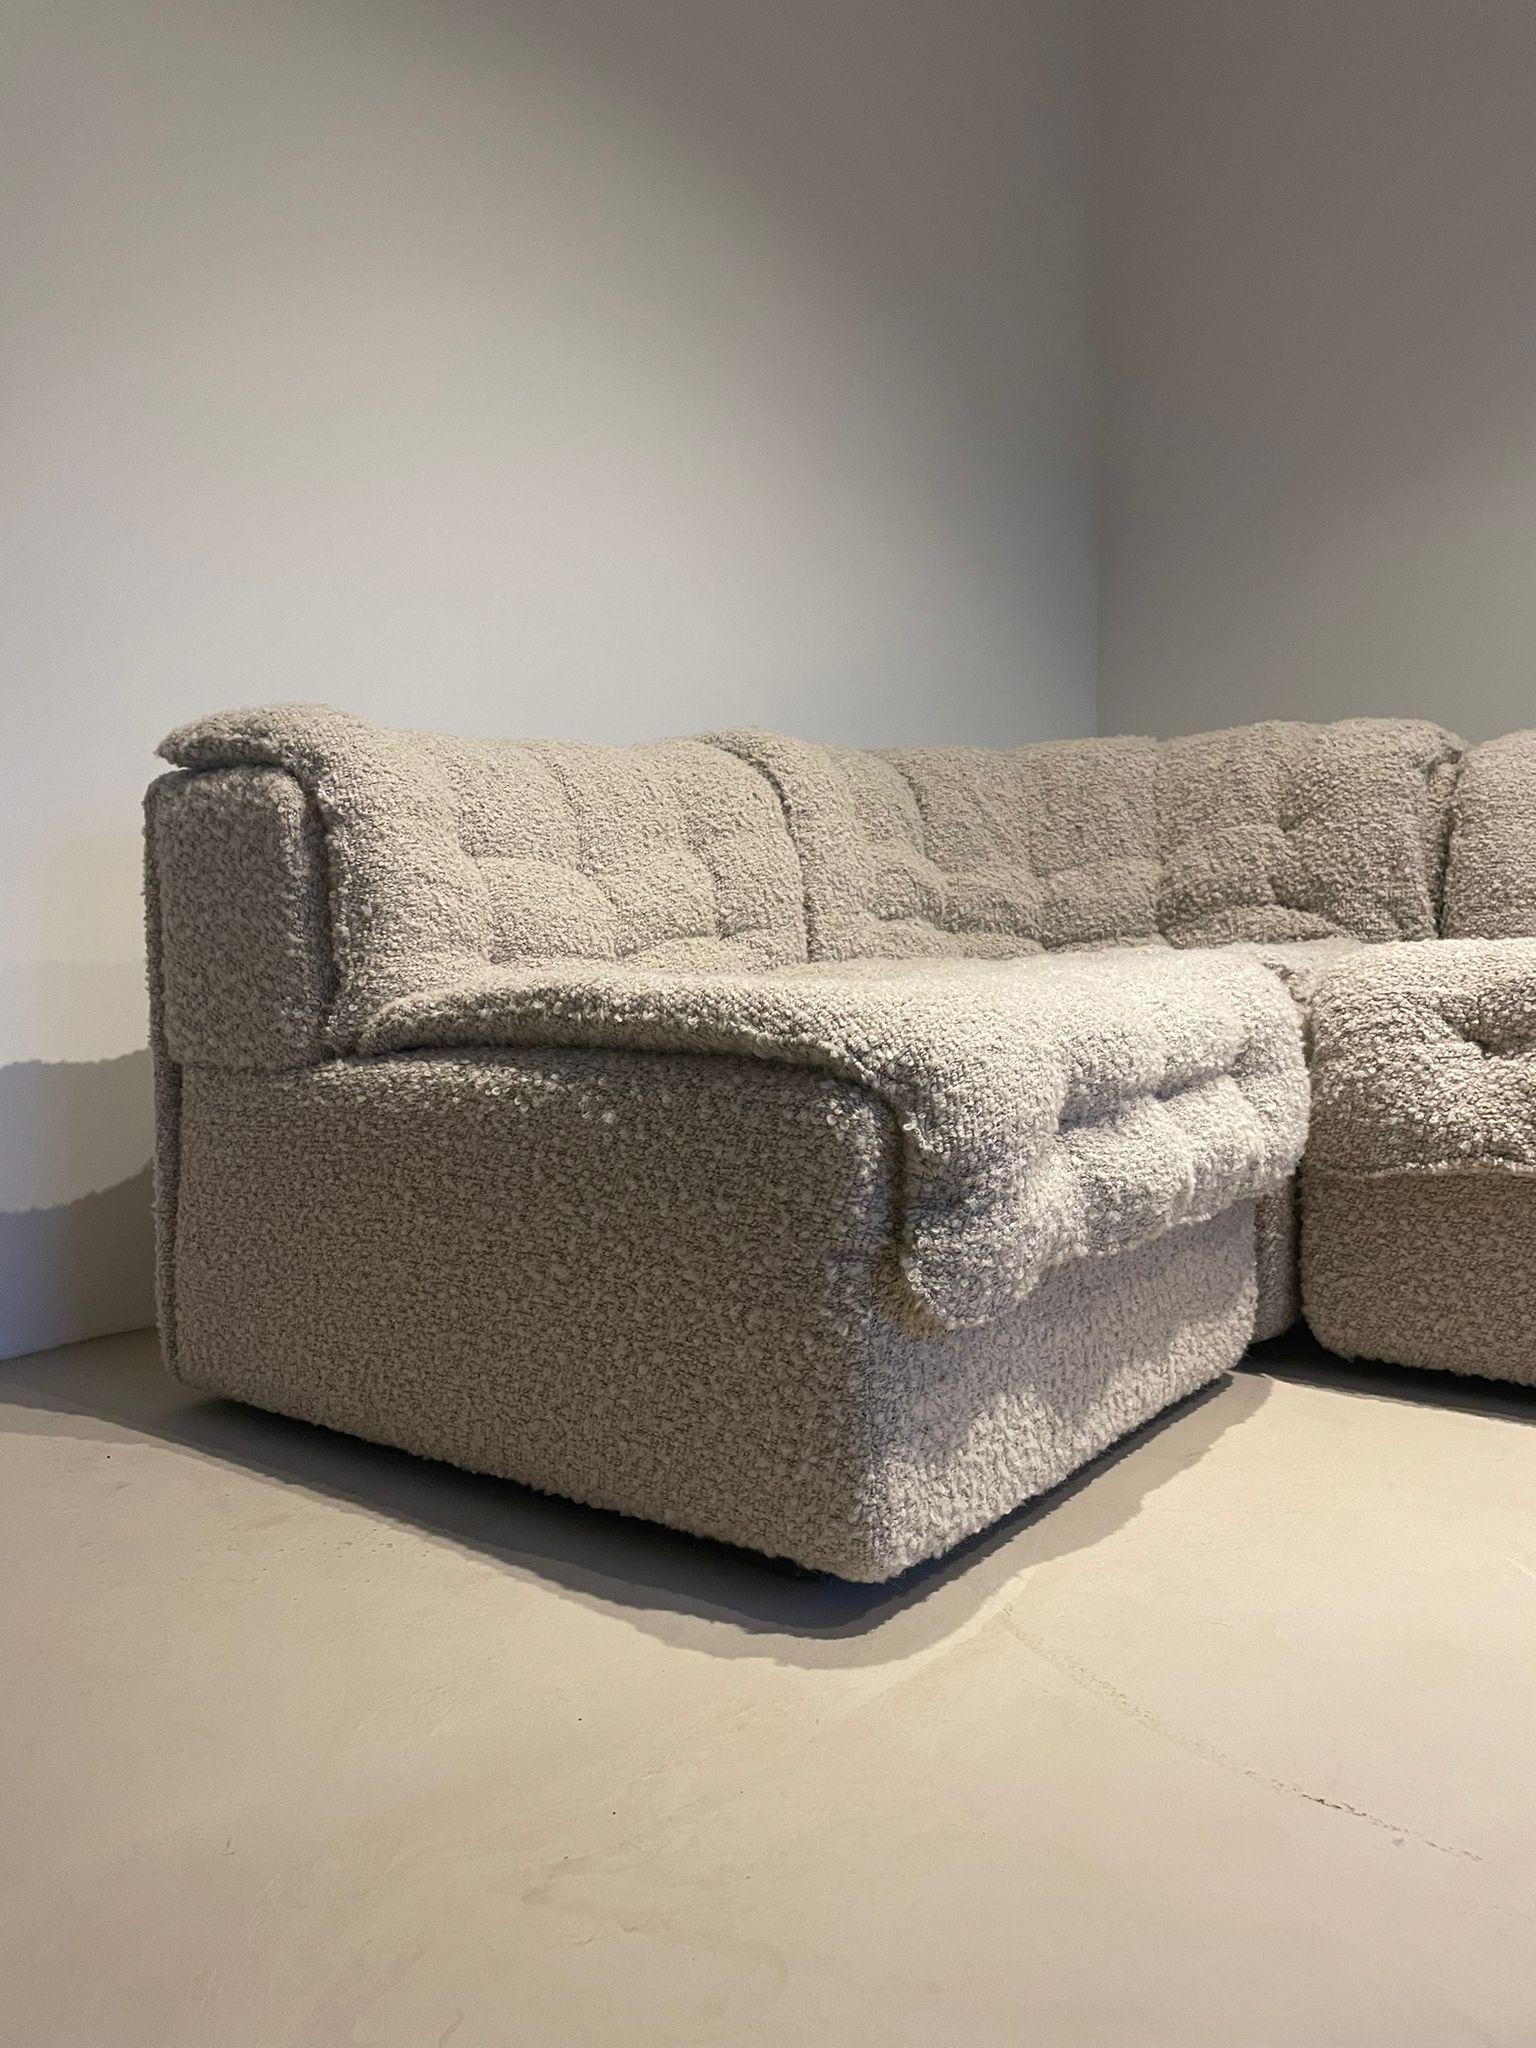 Modulair Vintage Bouclé Patchwork sofa by Desede, DS-11 For Sale 6